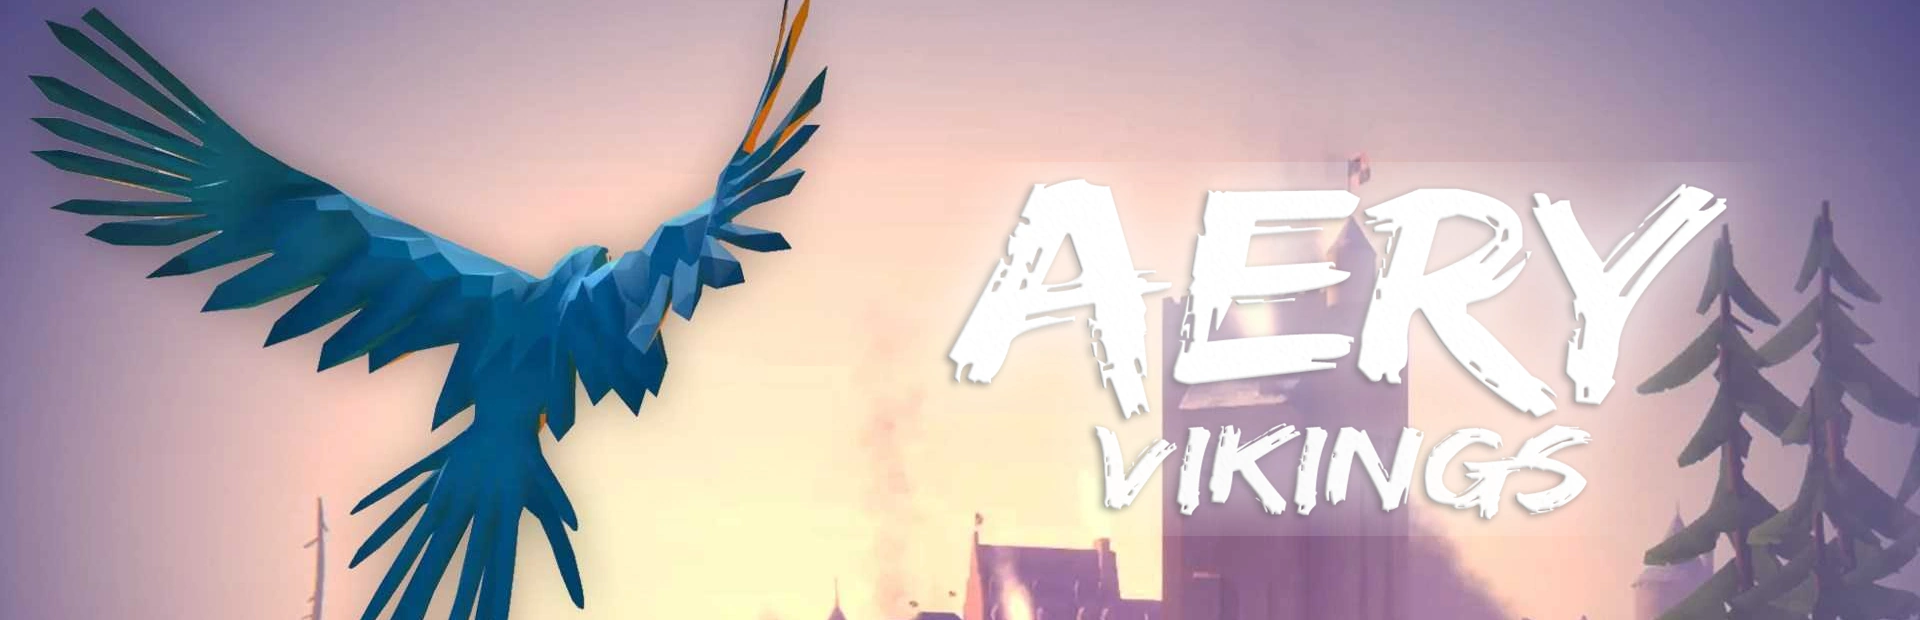 دانلود بازی Aery Vikings برای PC | گیمباتو